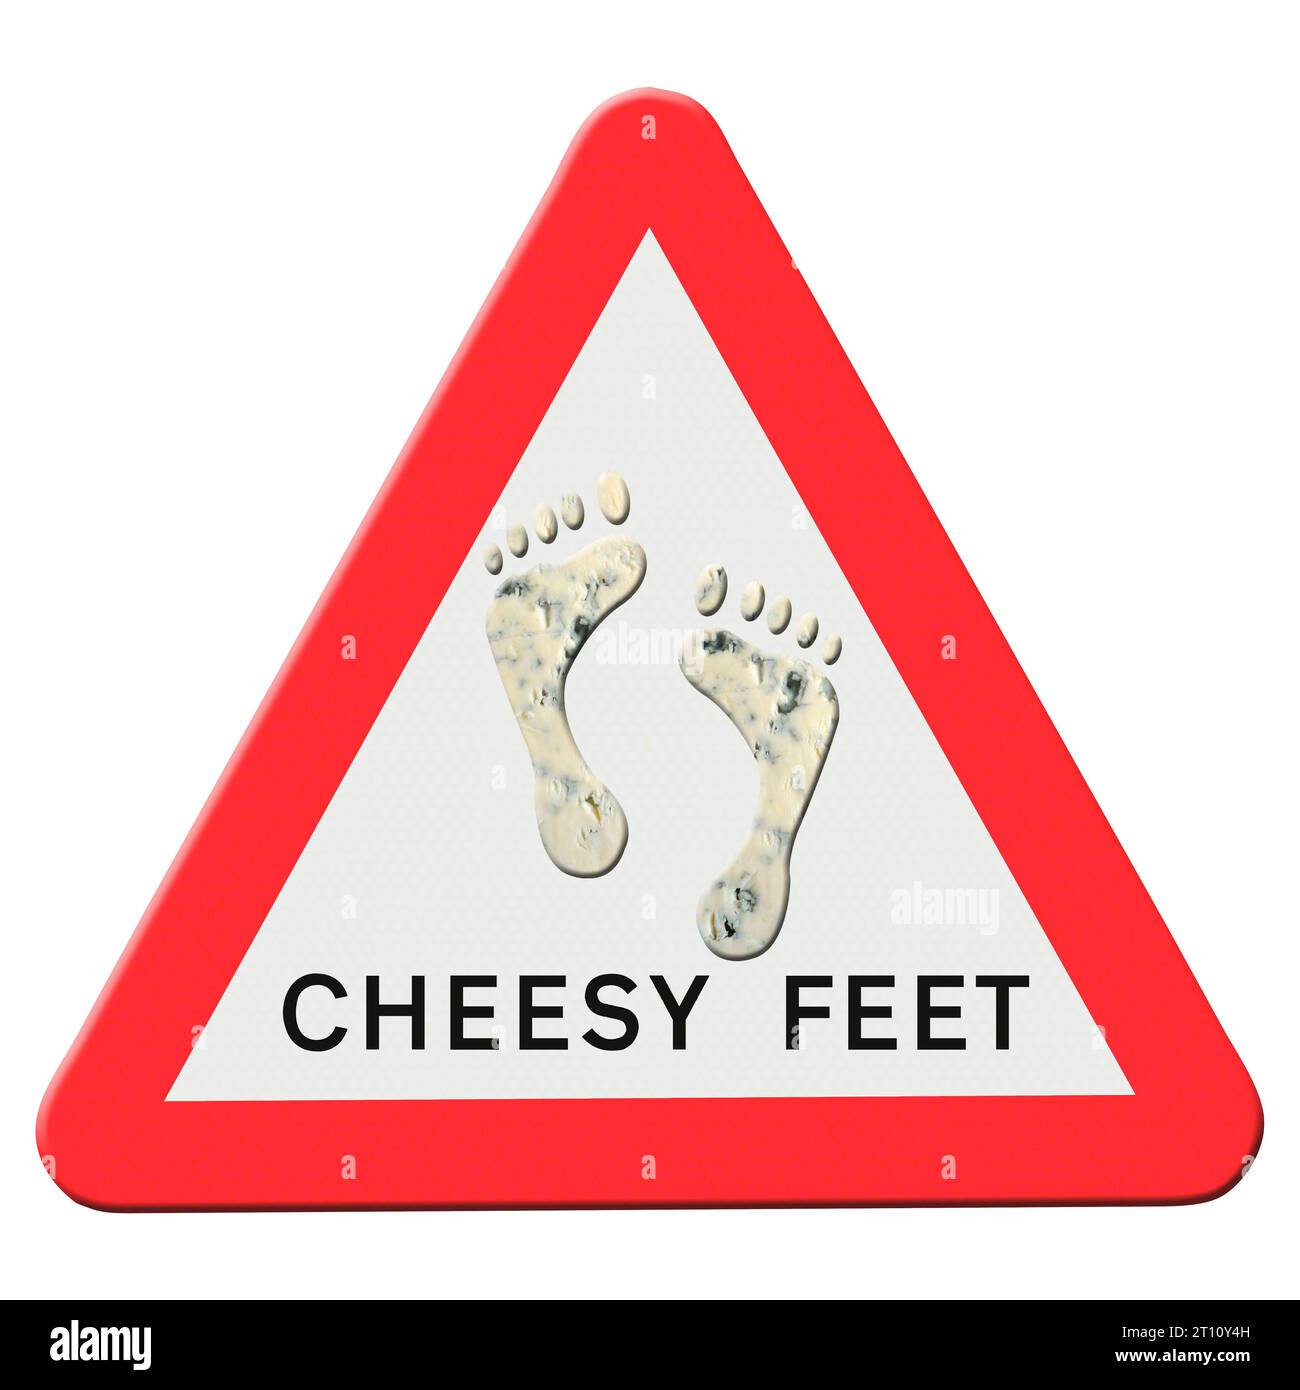 Abbildung – Warnschild für Cheesy Feet Animation der tanzenden Füße verfügbar. Studien haben gezeigt, dass der Geruch der Füße einer Reihe von Bakterien zugeschrieben werden kann, wobei Staphylokokken der Hauptverantwortliche für den Geruch sind. Es wird behauptet, dass Malariamücken, die Mücken tragen, eher von stinkenden Füßen angezogen werden. Quelle: Imago/Alamy Live News Stockfoto